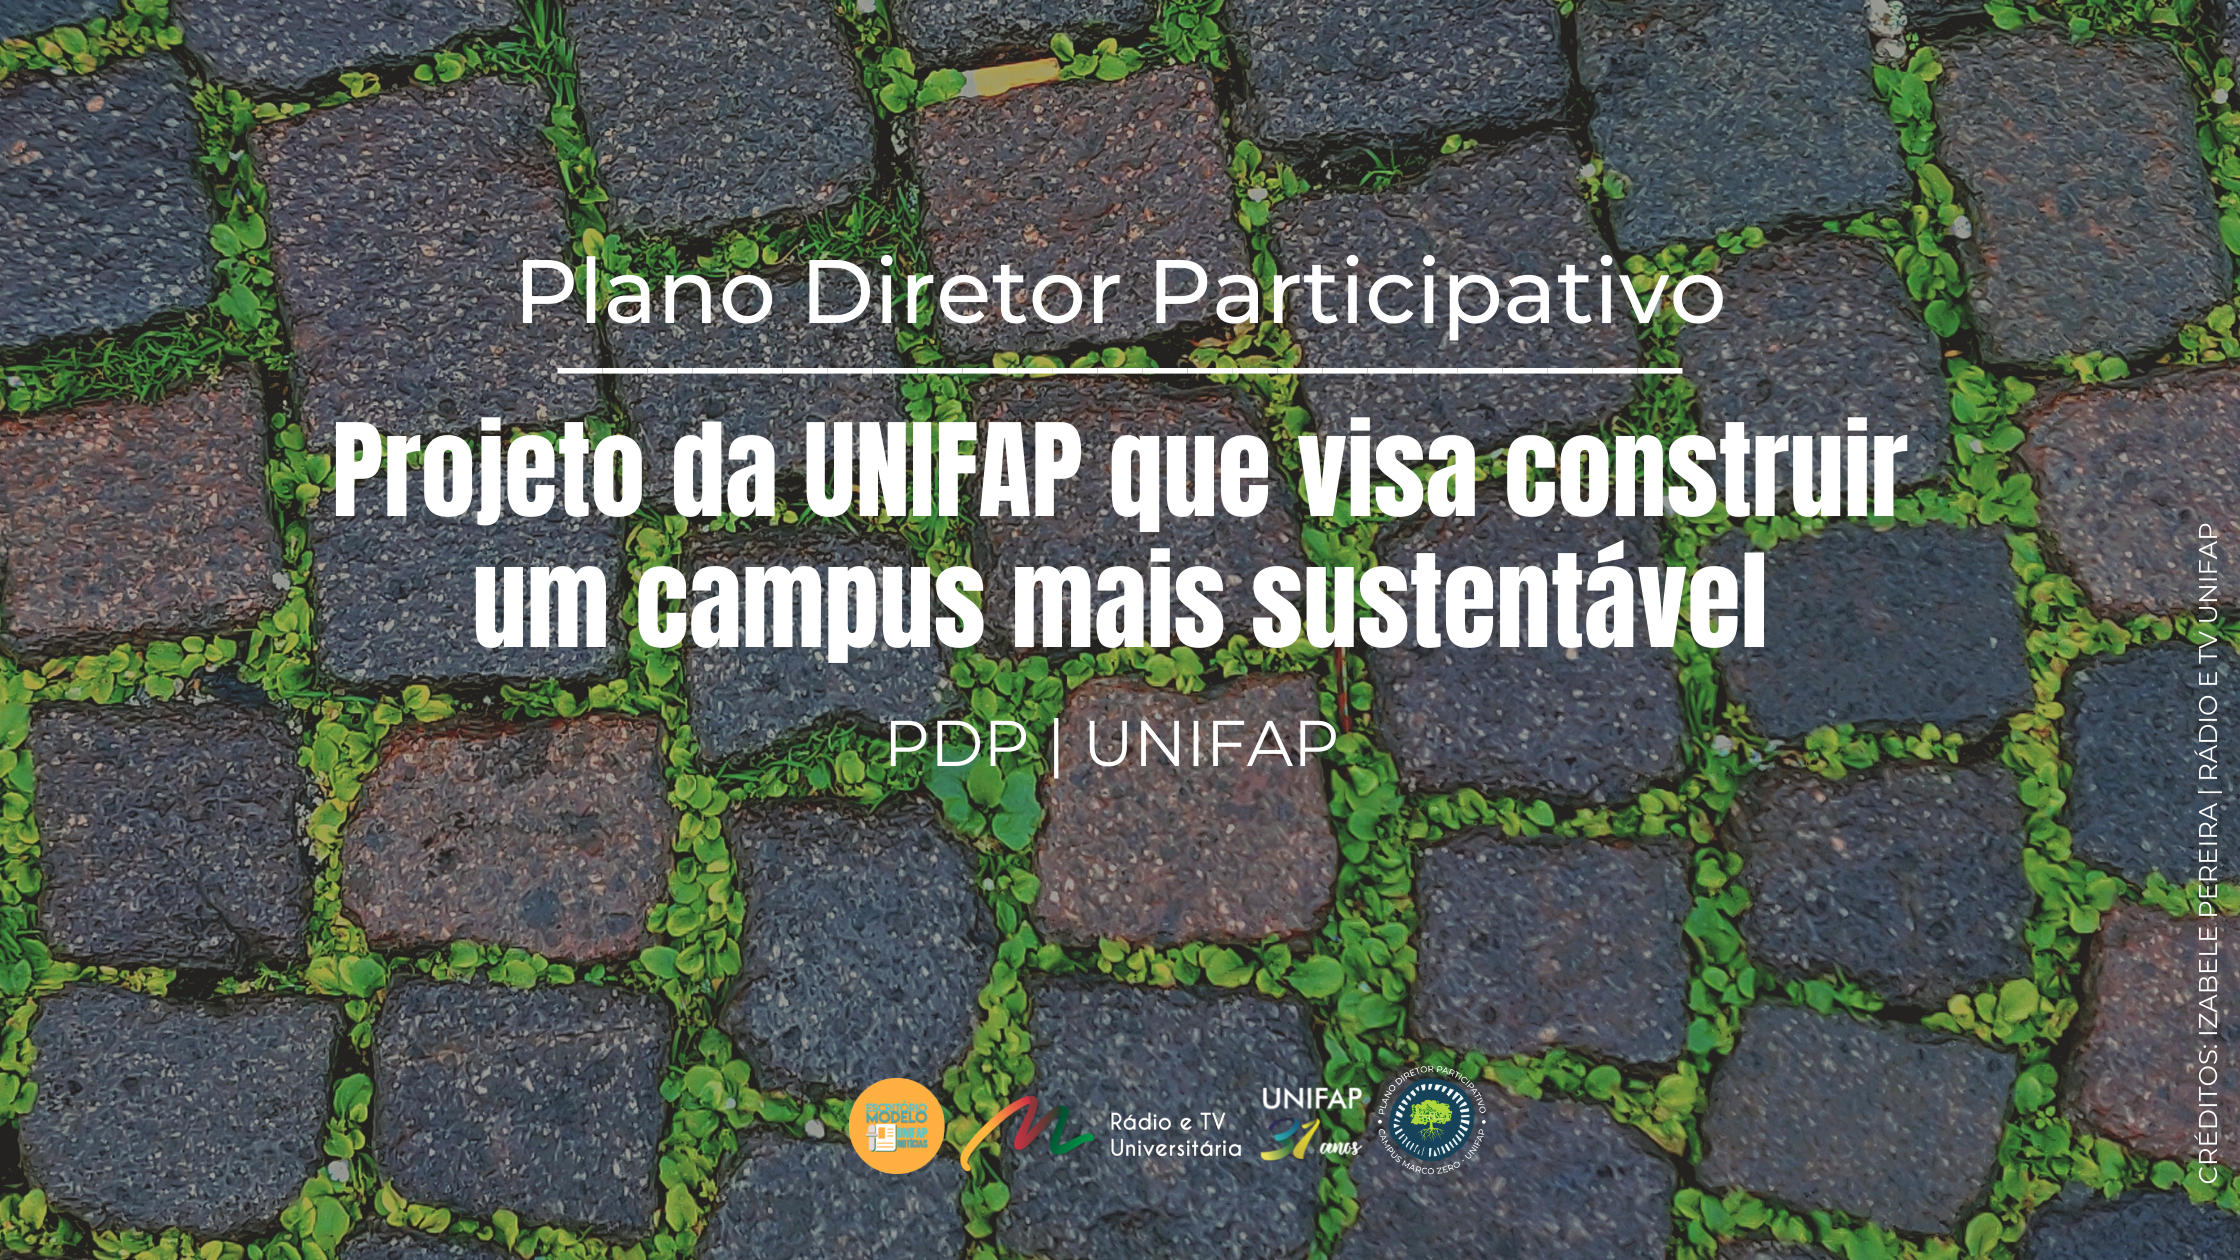 Você está visualizando atualmente Conheça o Plano Diretor Participativo da UNIFAP